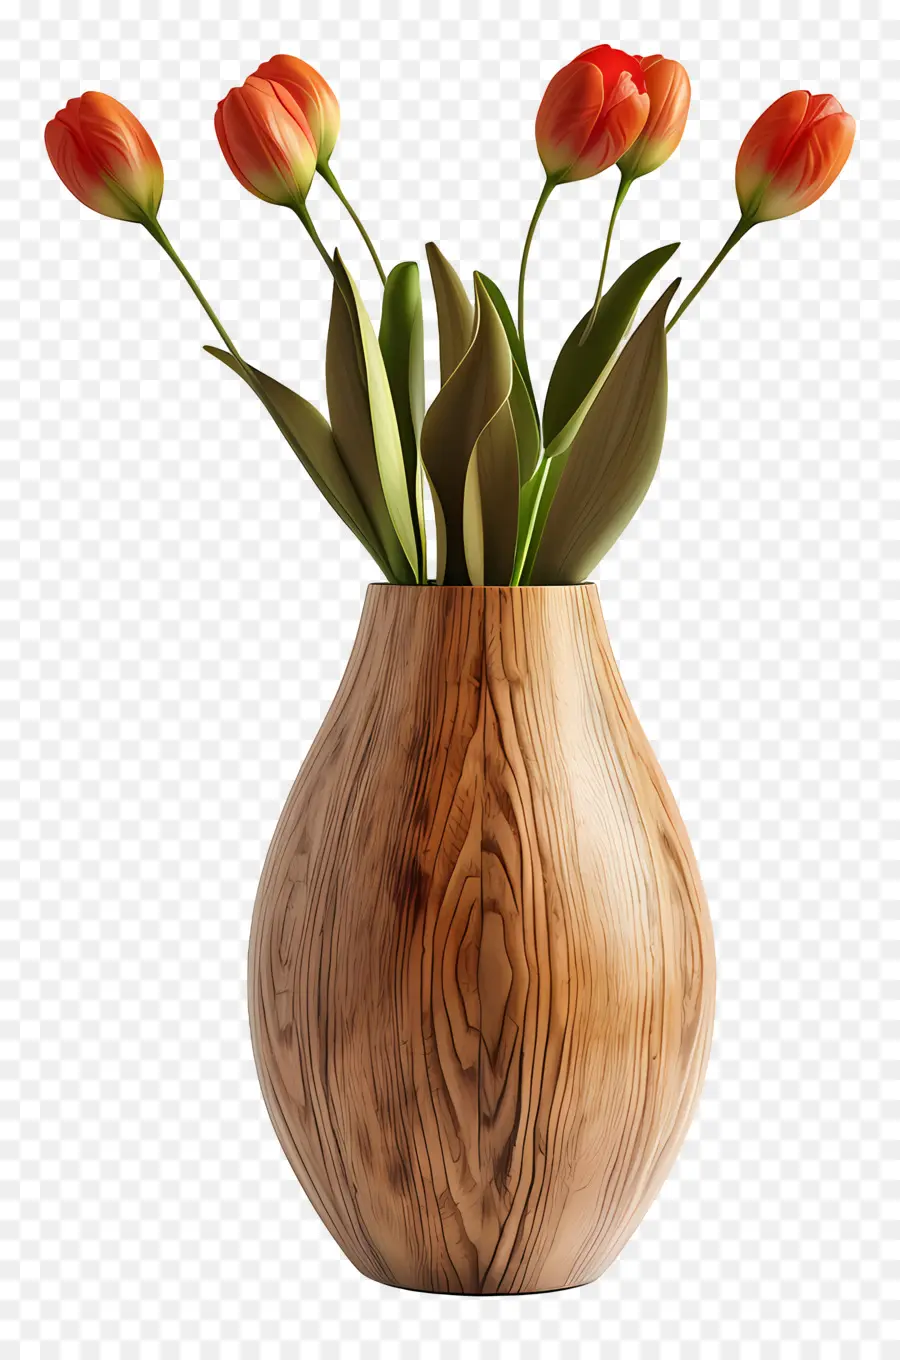 la disposizione dei fiori - Tulipani aranci aranci nel vaso di legno